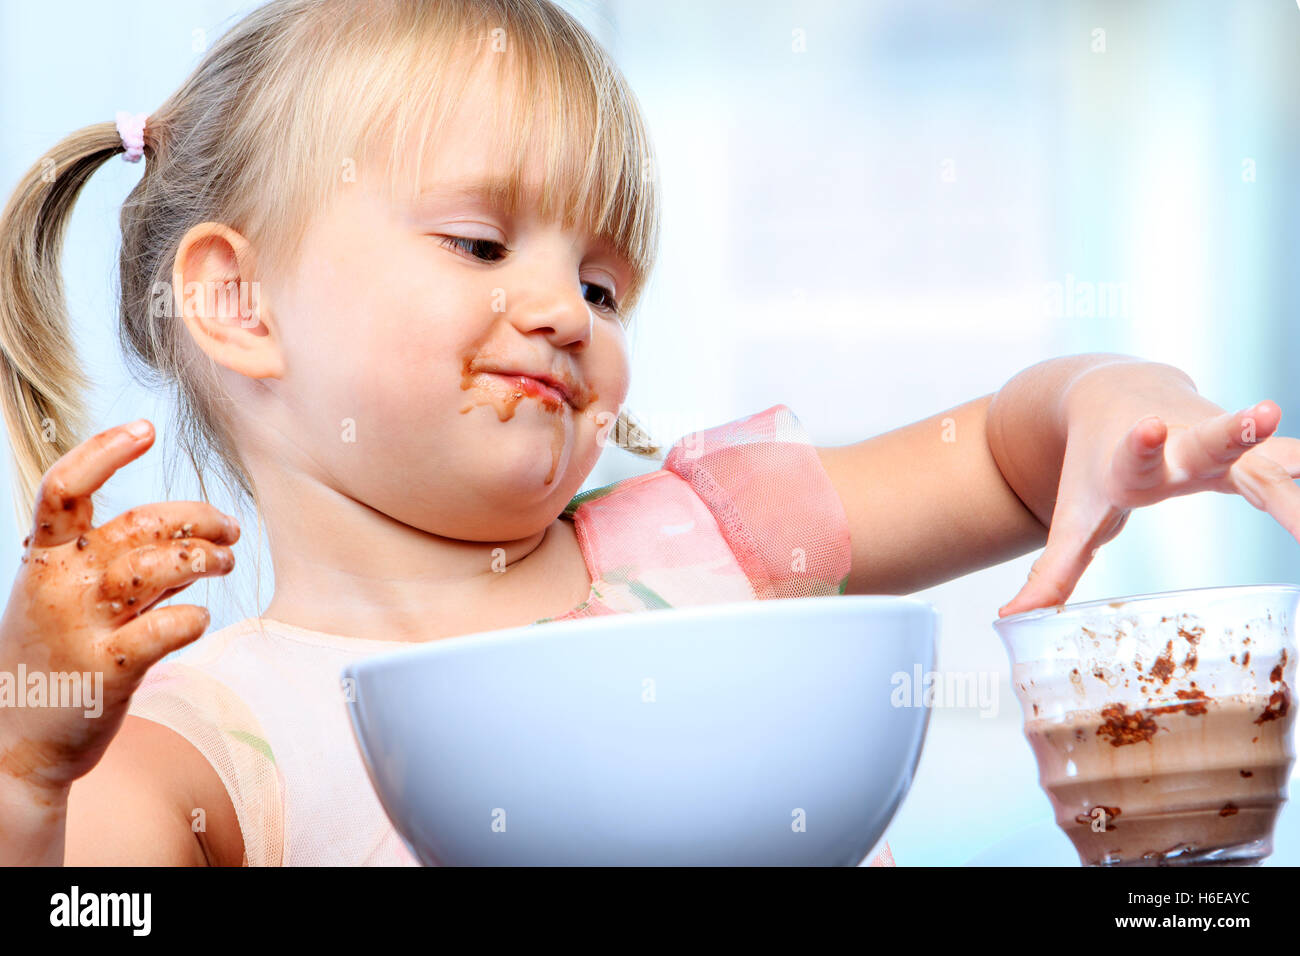 Portrait de petite fille au petit-déjeuner. Taux de répandre et de jouer avec du lait au chocolat. Banque D'Images